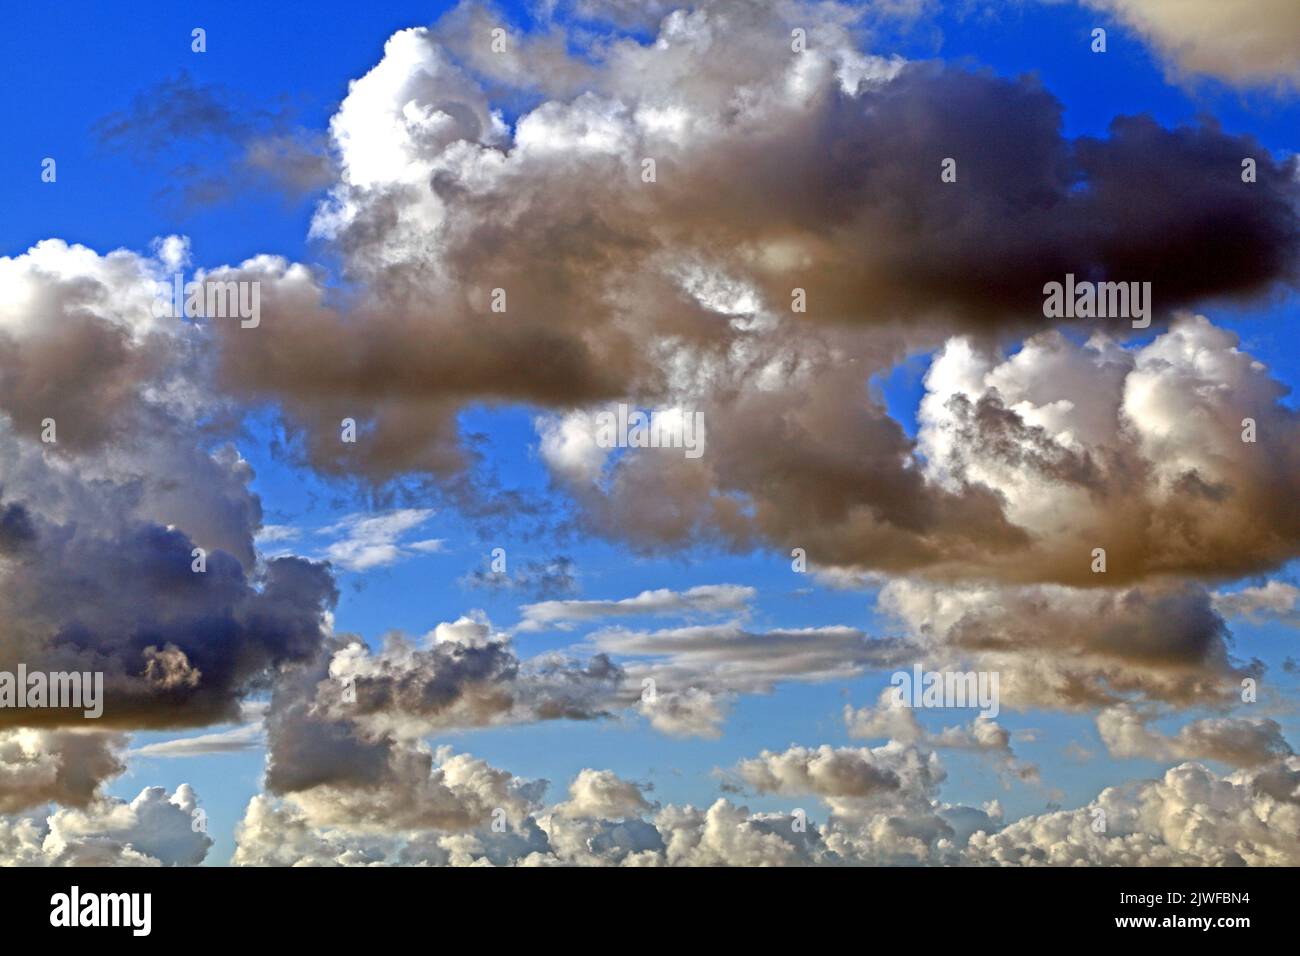 Bianco, grigio, scuro, nuvola di cumulo, nuvole, Cielo blu, cieli, meteo, meteorologia, Inghilterra, REGNO UNITO Foto Stock